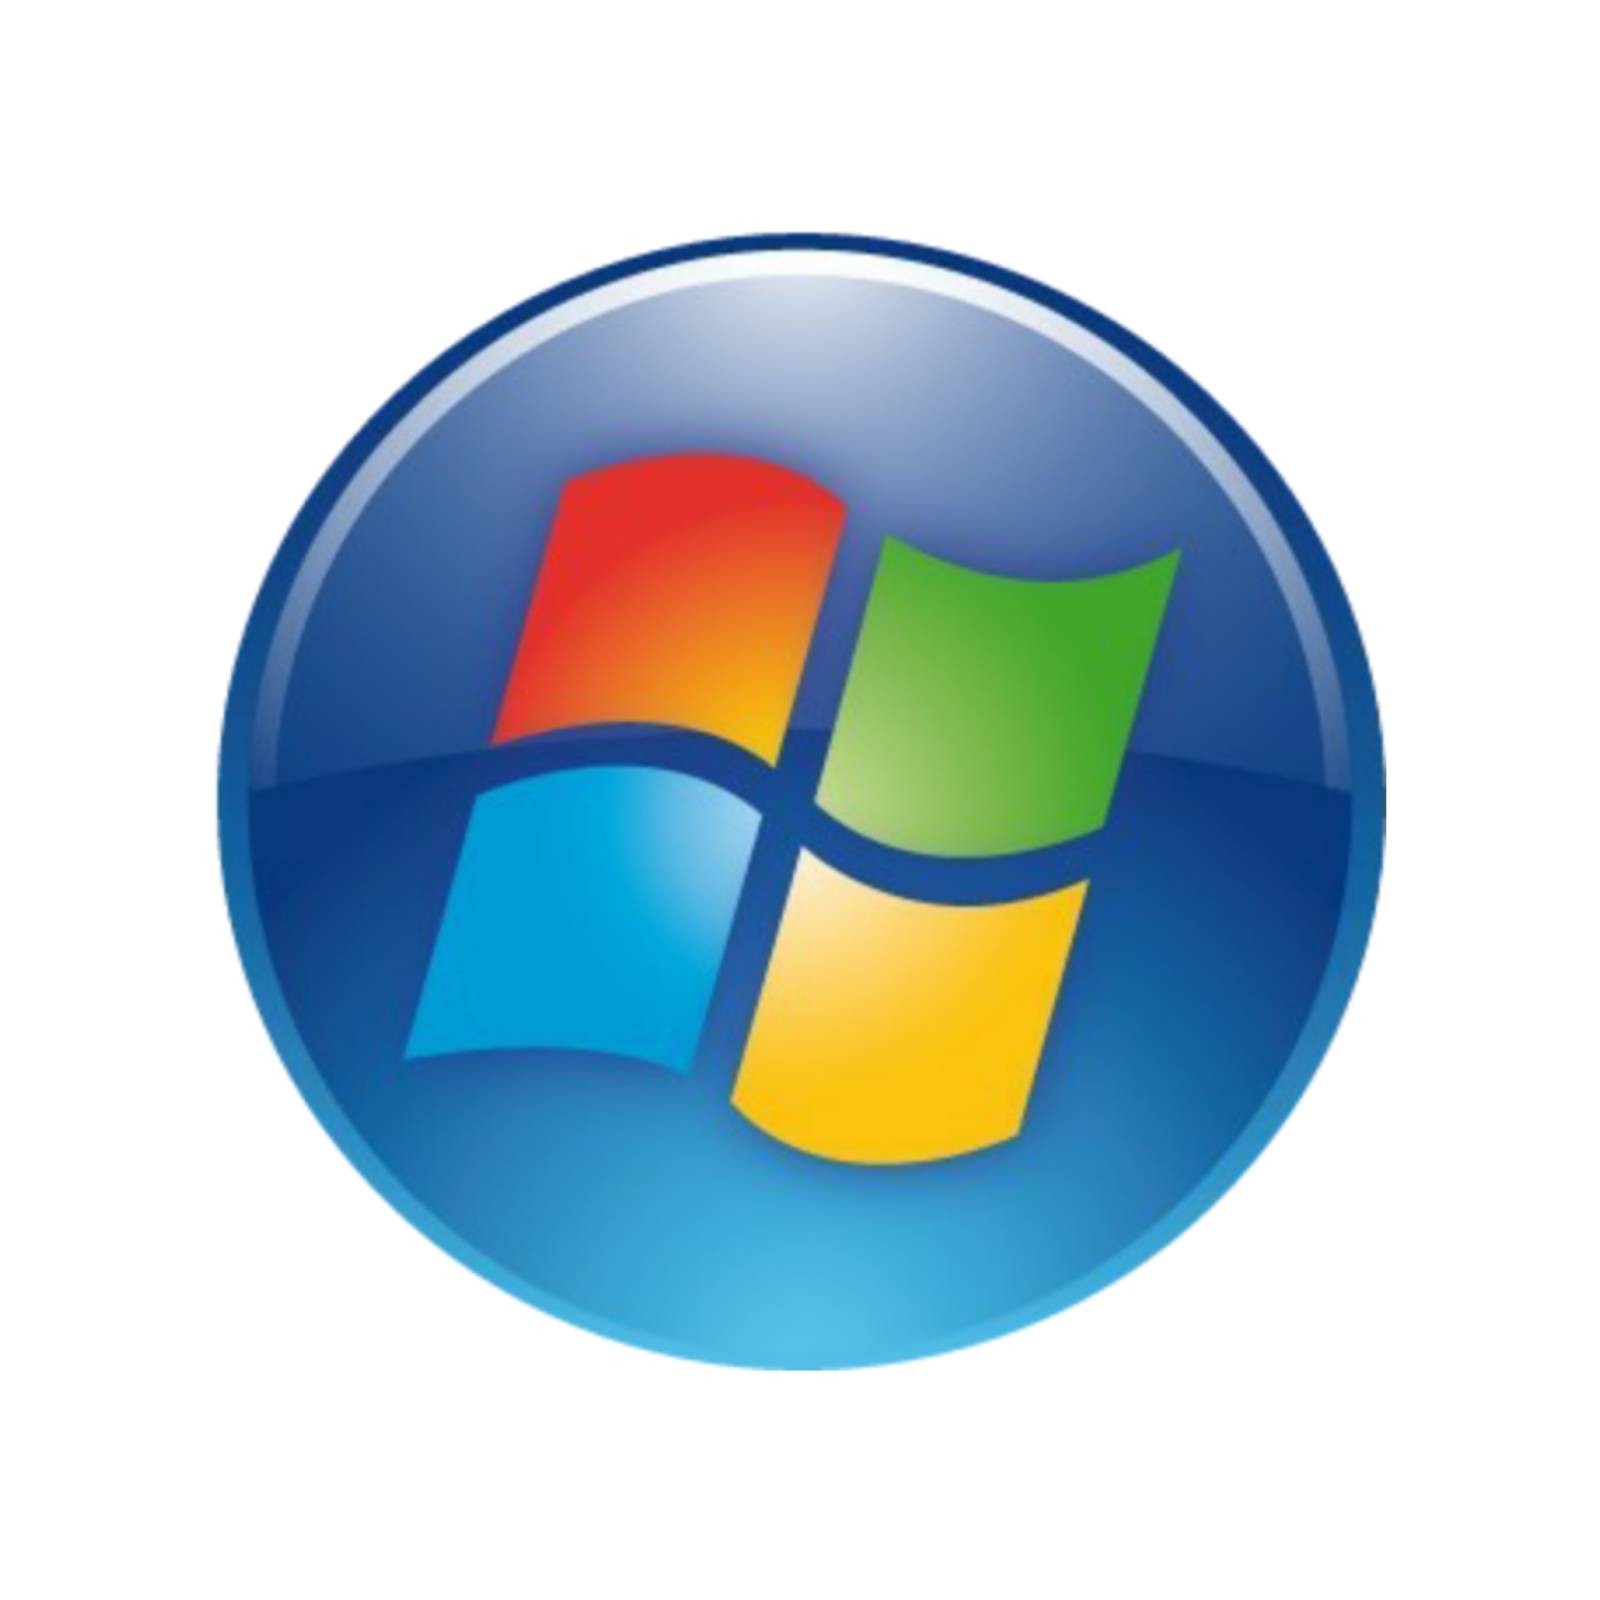 Кнопка пуск виндовс 7. Меню пуск виндовс 7. Значок Windows 7. Значок пуск. Windows 7 icons